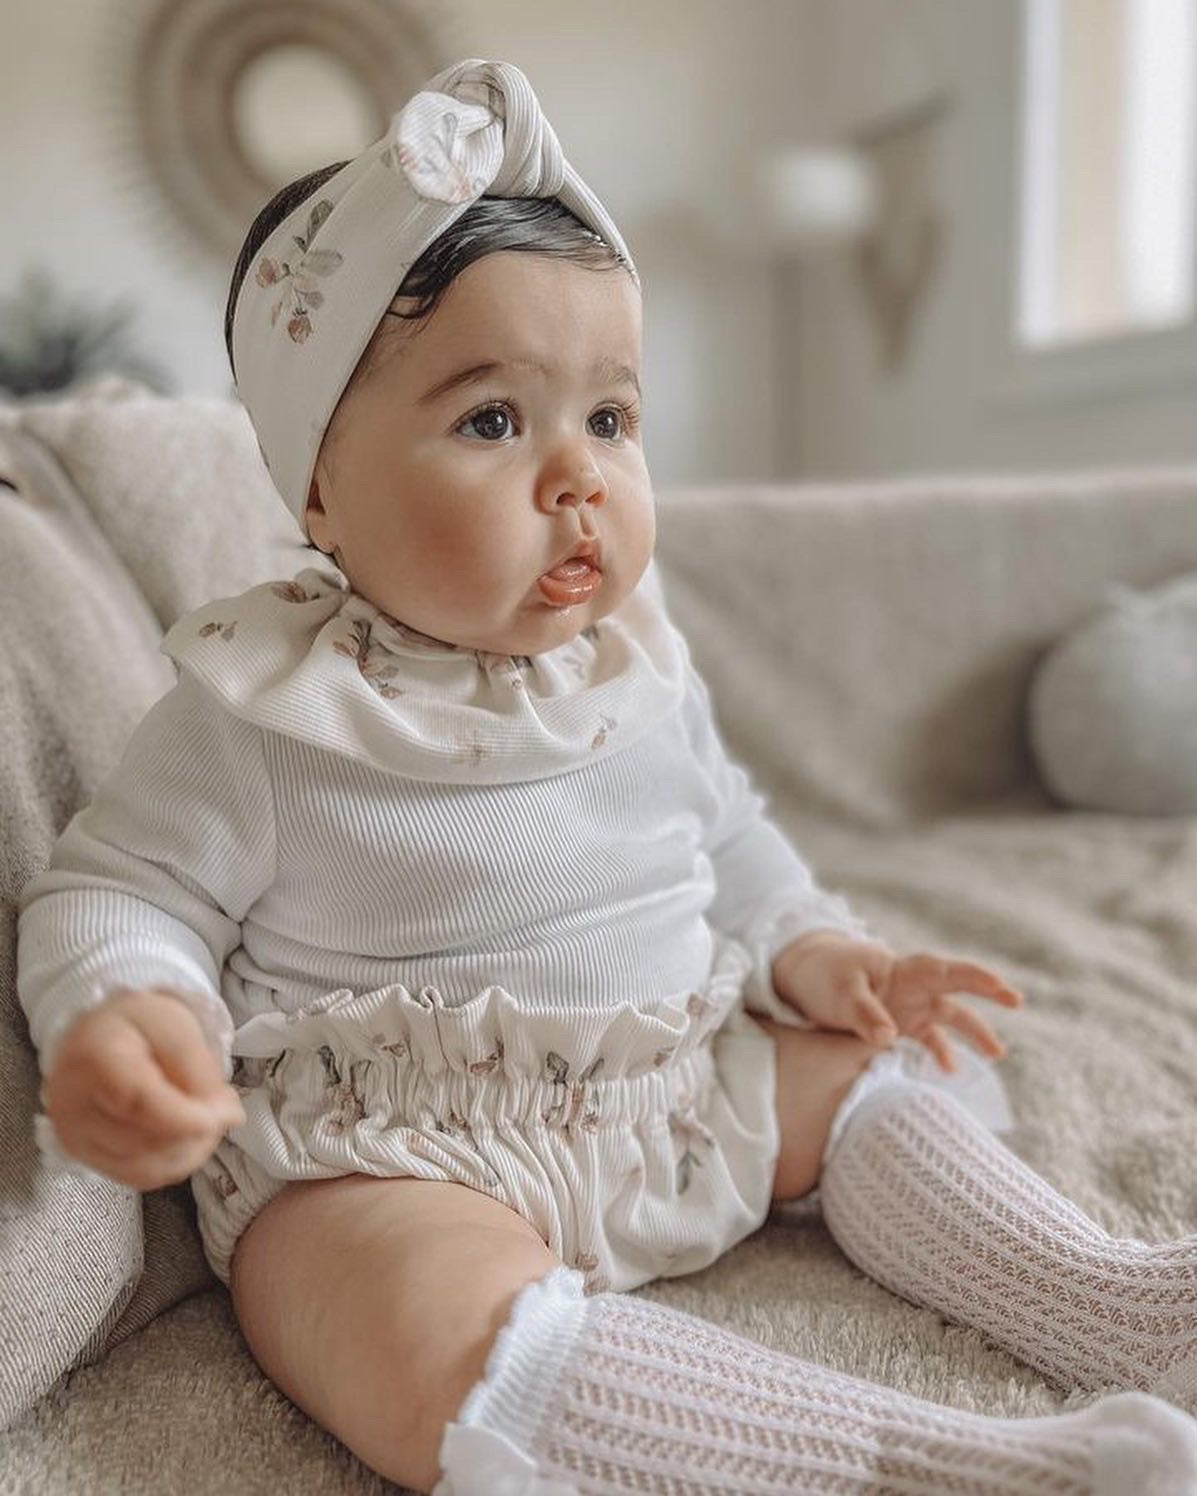 Turban nœud bébé fille - accessoires bébé - Bonheur enfantin